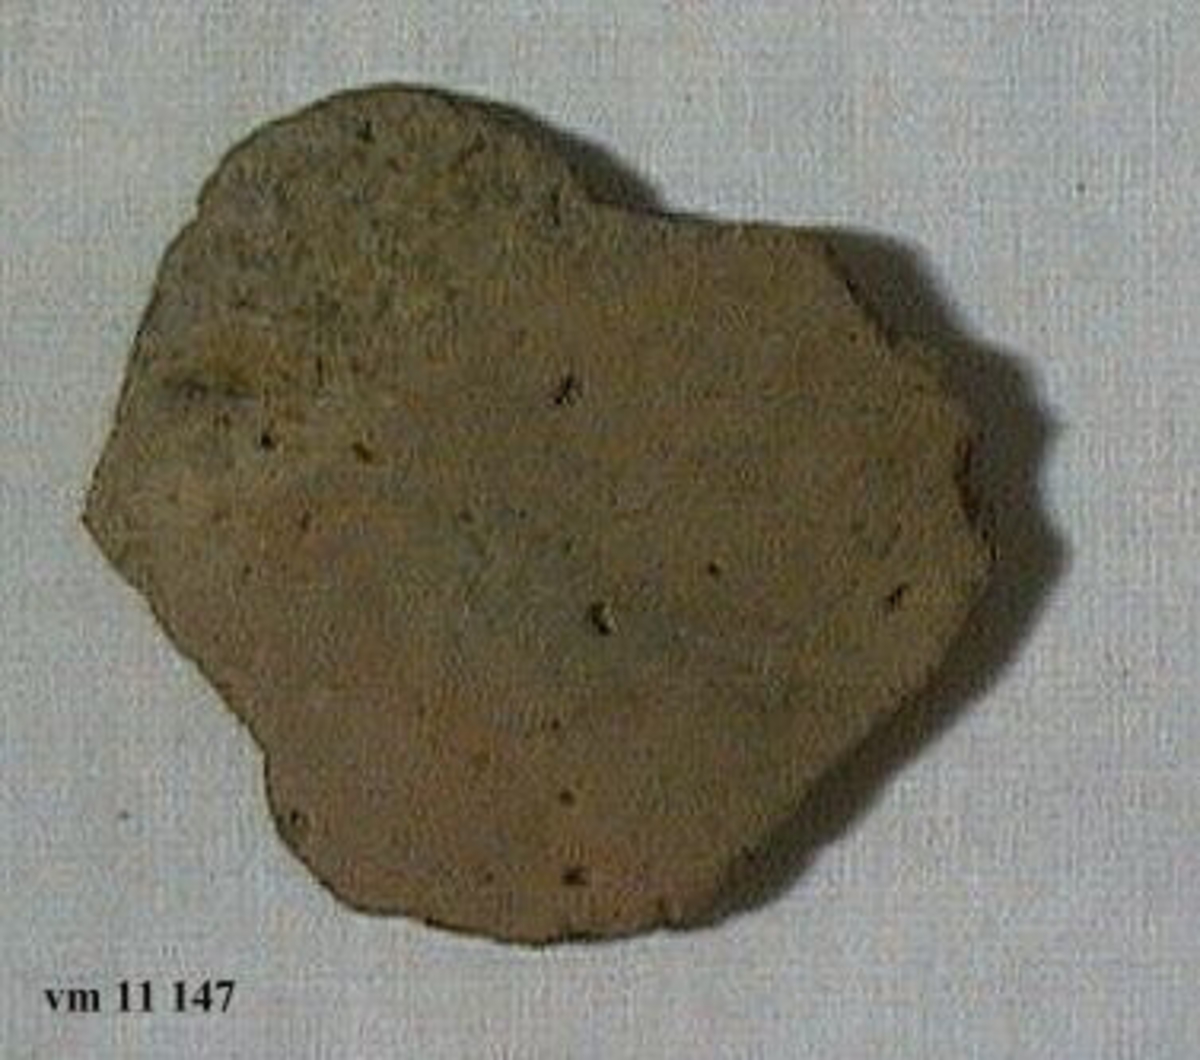 11 147: Från Kongsviken, Morlanda socken, Bohuslän.

Keramikskärva, oornerad, 1 st. L. 7,4 cm